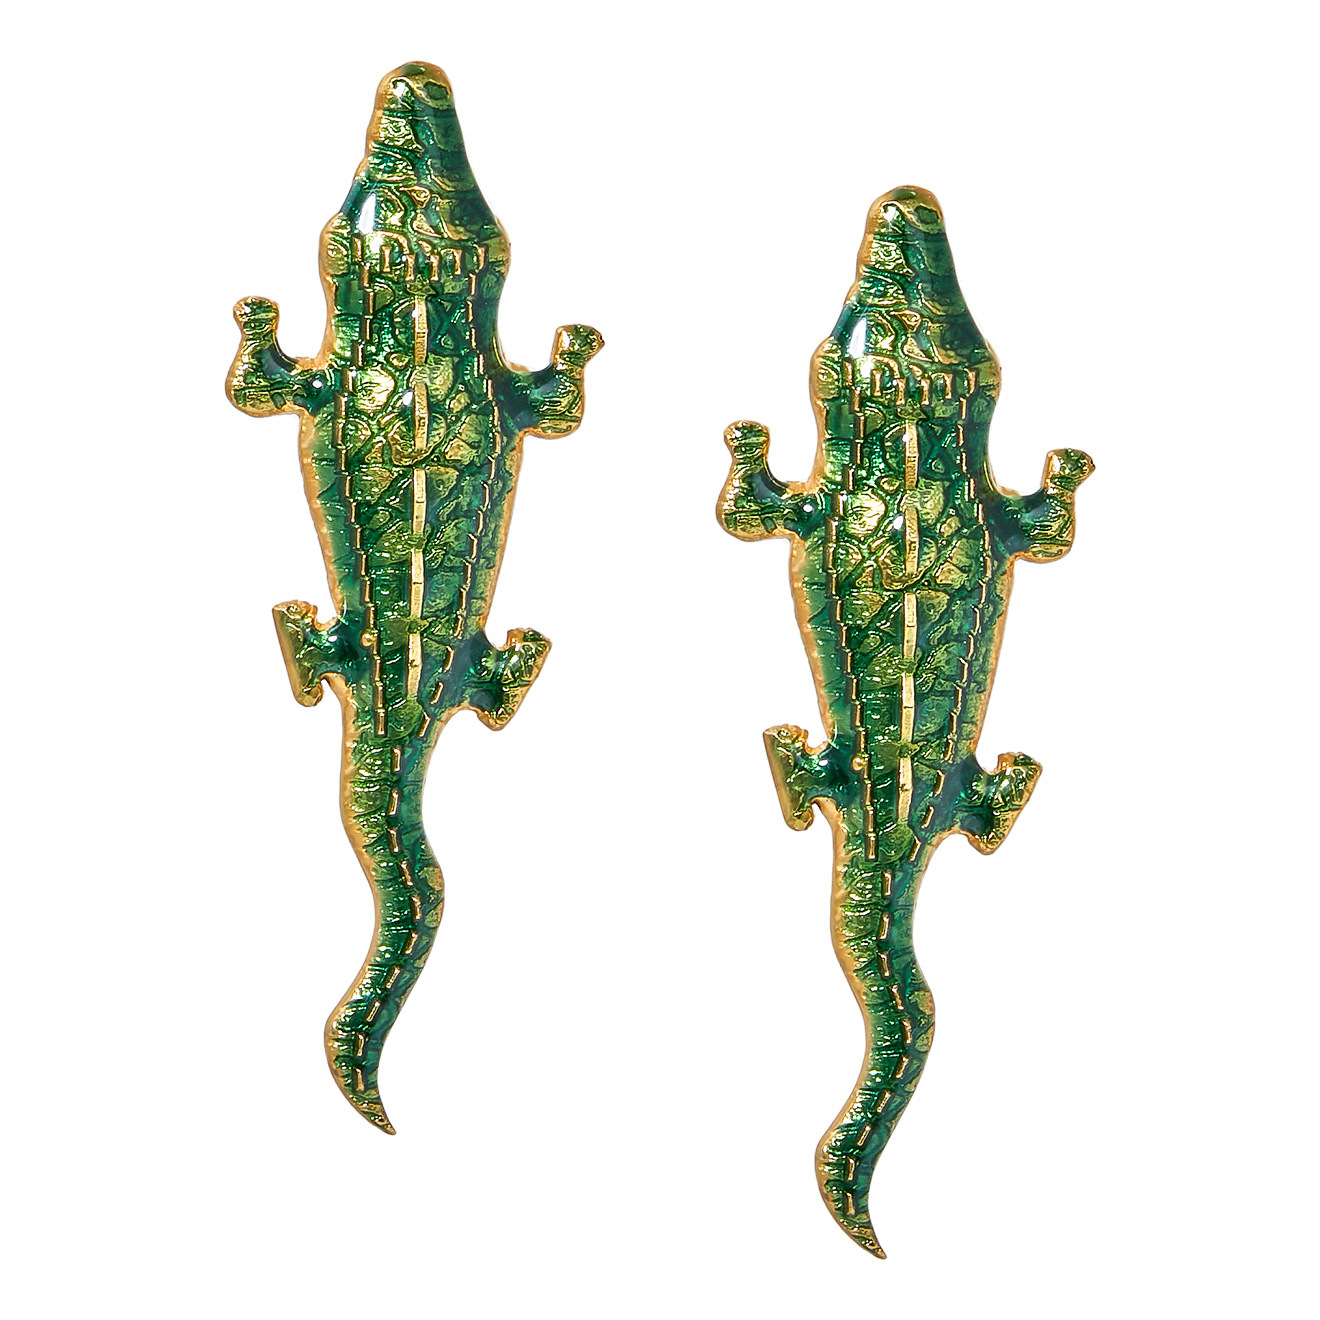 Natia x Lako Зеленые серьги-крокодилы цена и фото